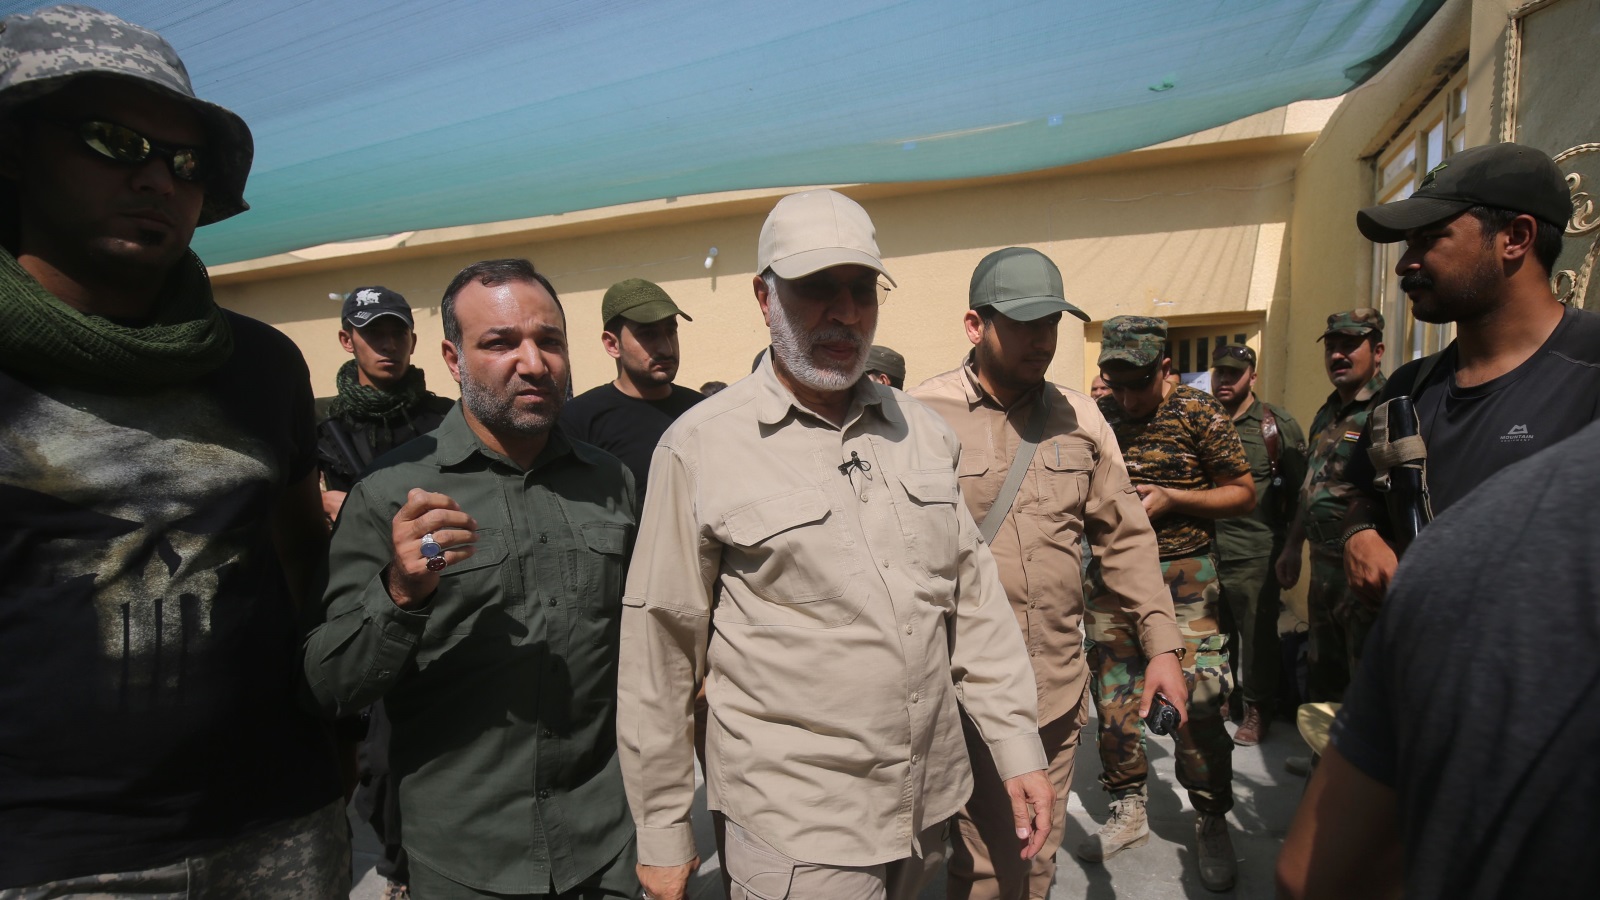 أبو مهدي المهندس نائب قائد الحشد الشعبي الذي تضعه الولايات المتحدة على قوائمها للإرهاب(غيتي)